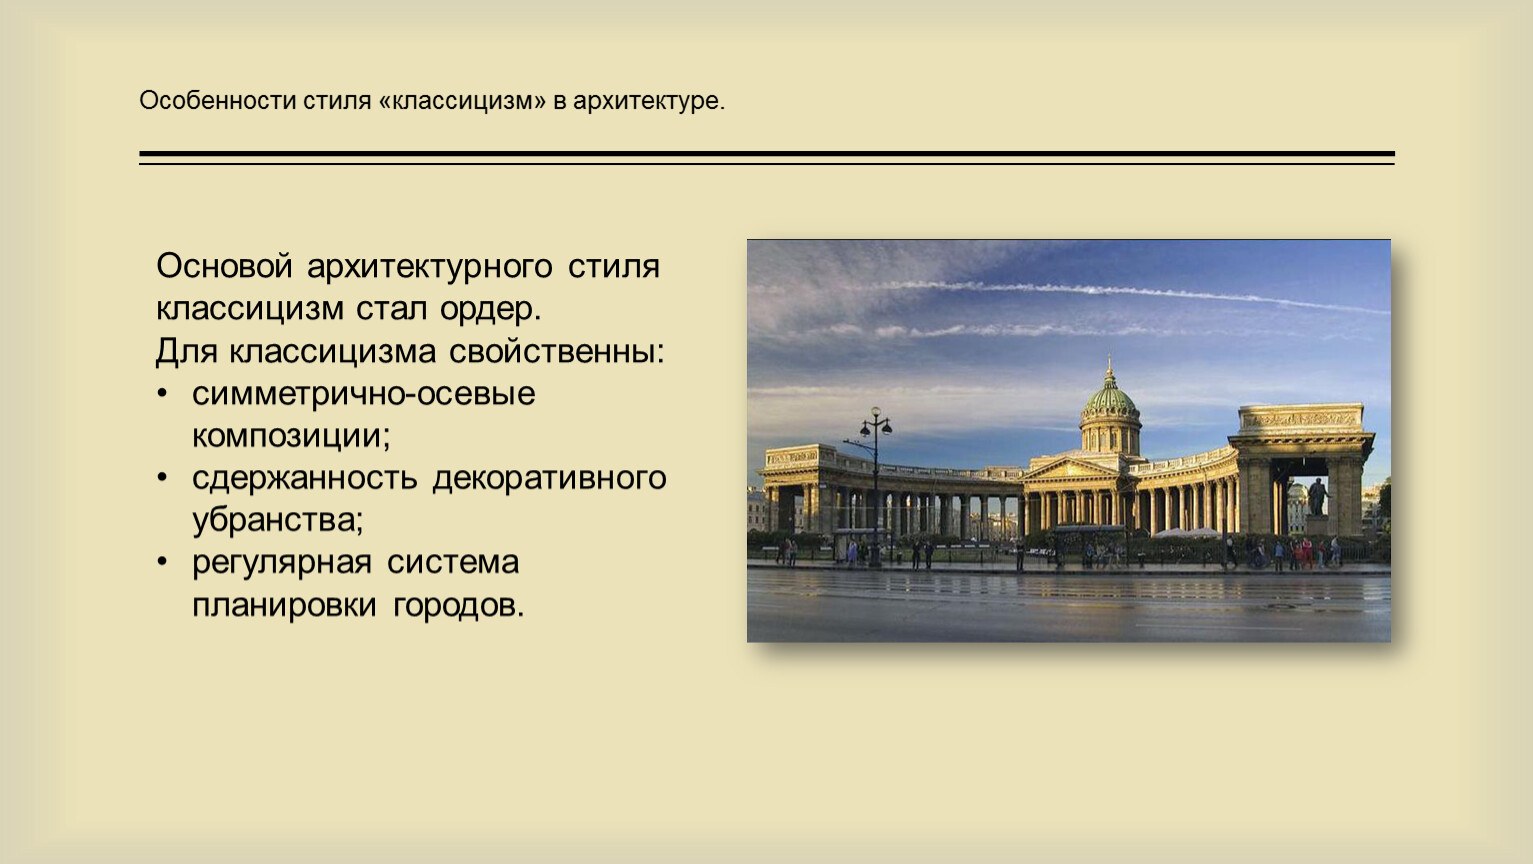 Признаки классицизма в архитектуре России 18 века